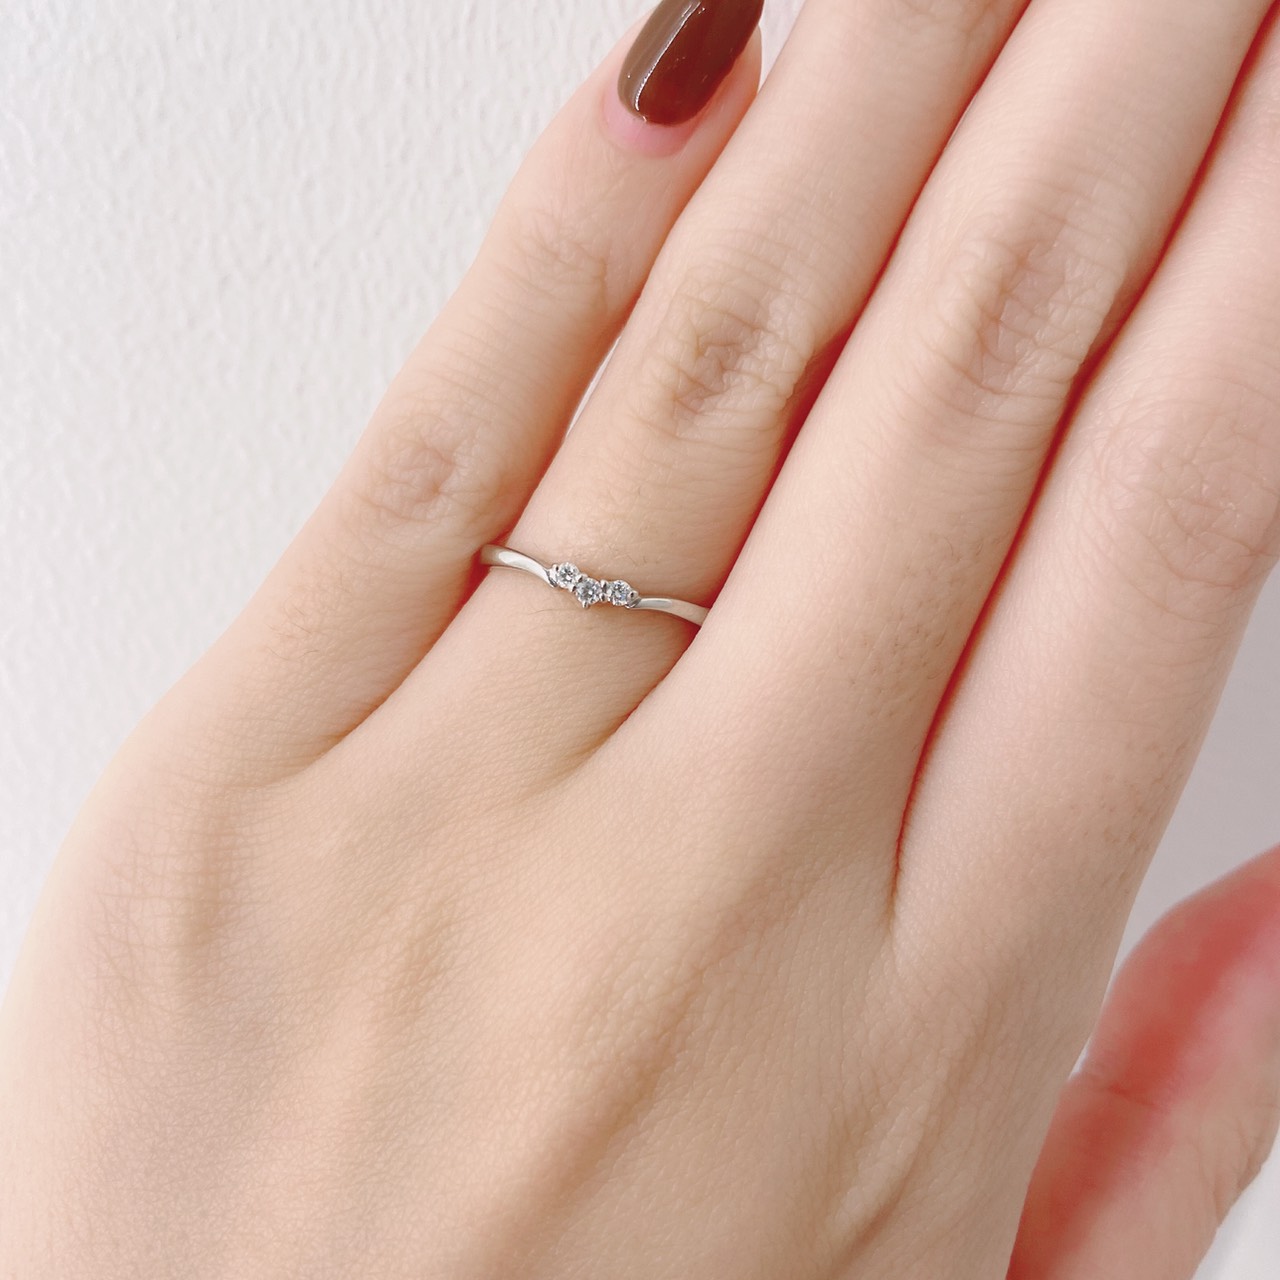 アンジーは新潟のブローチで2本で10万円で帰る結婚指輪ダイヤモンド付き